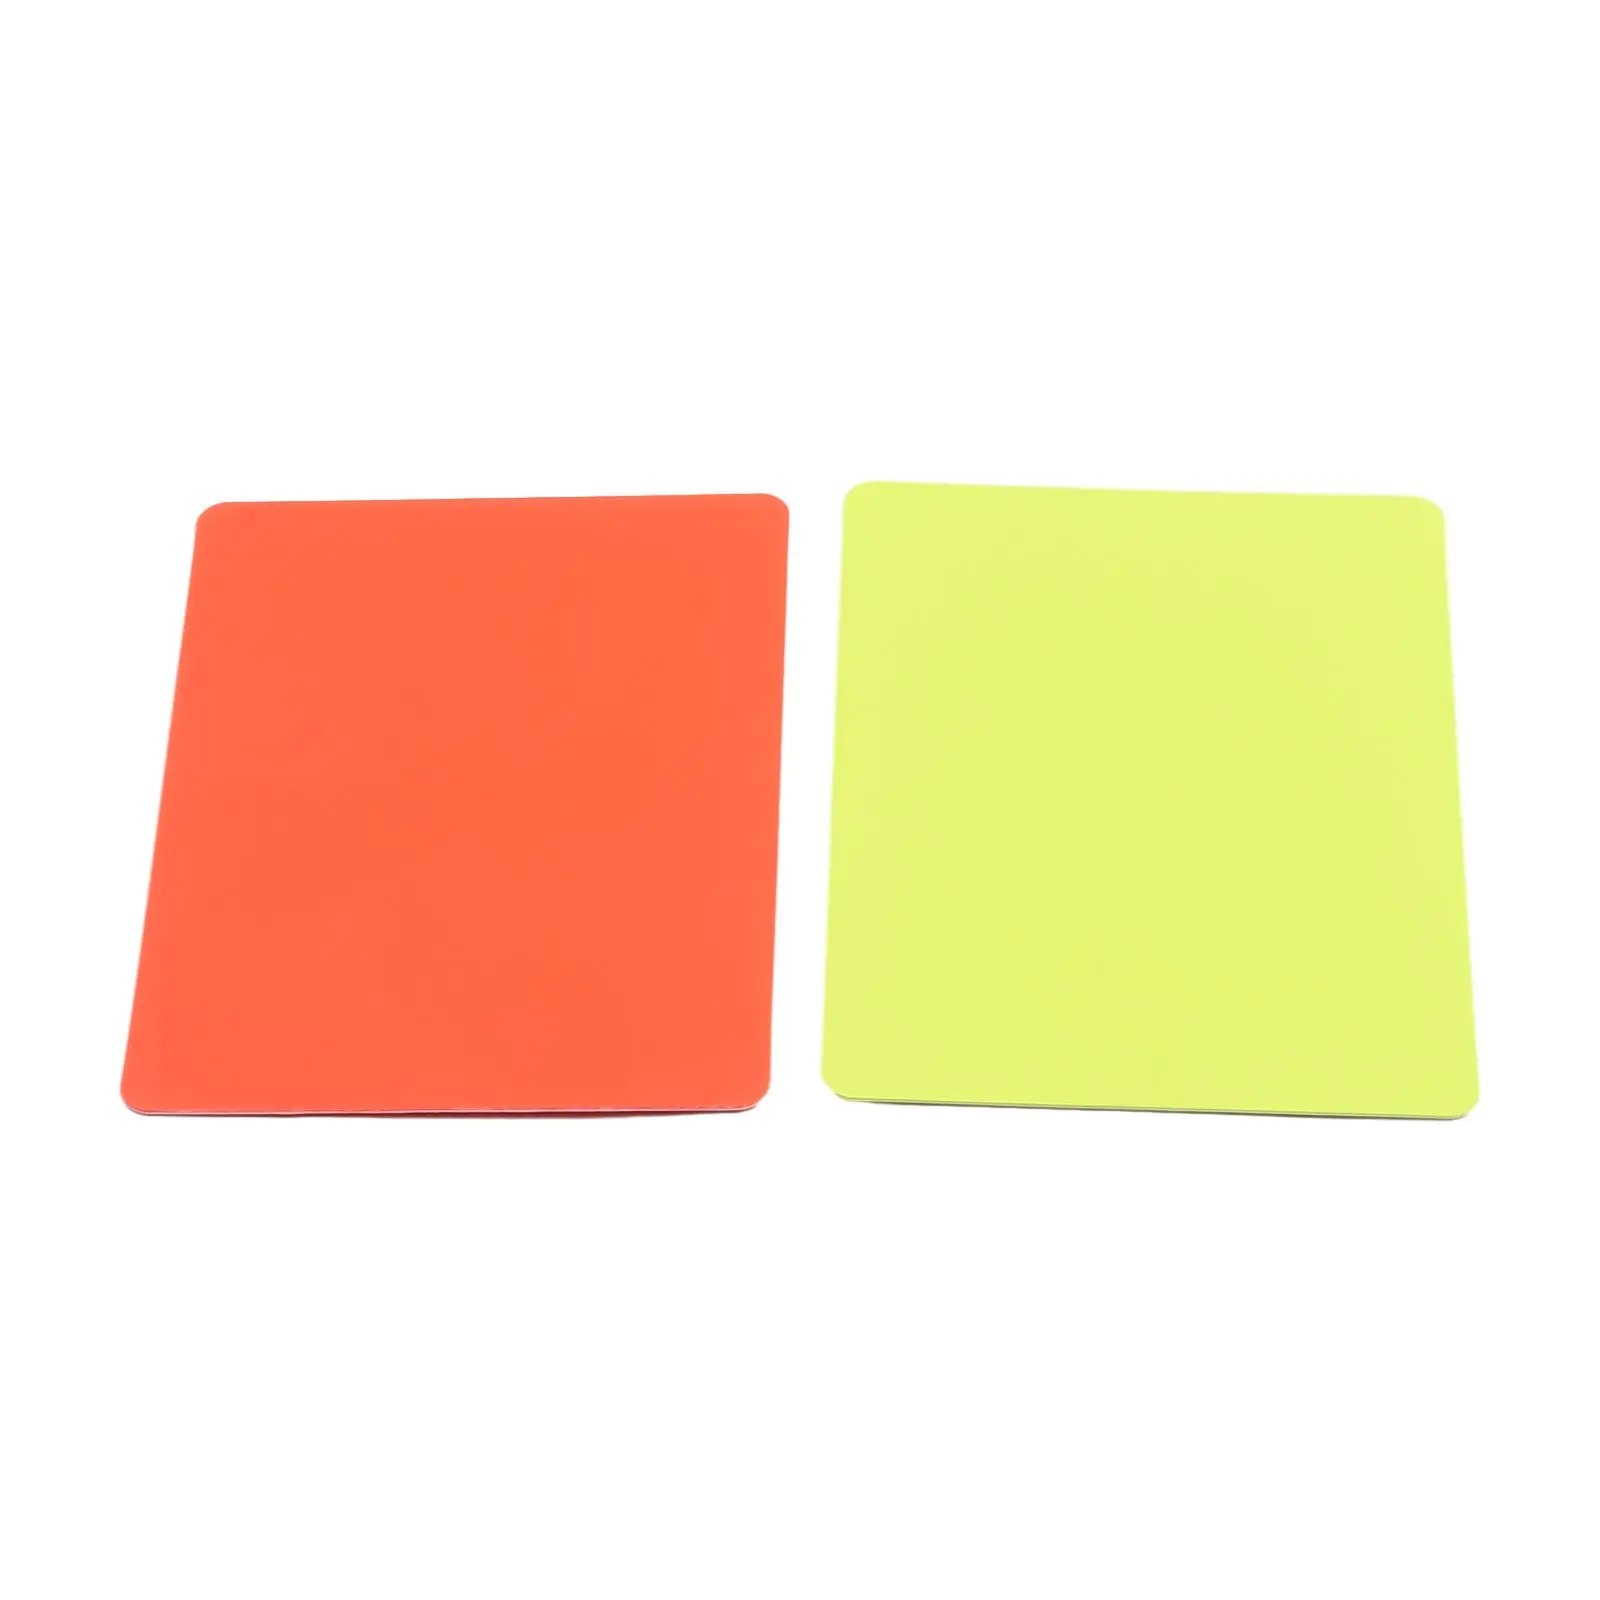 Durabil Cartonaș Roșu Card de Cărți Despre 14g Aprox 11*8cm Ușor Pentru a Stoca Ușor PVC Roșu Galben de Arbitri de Fotbal - 3